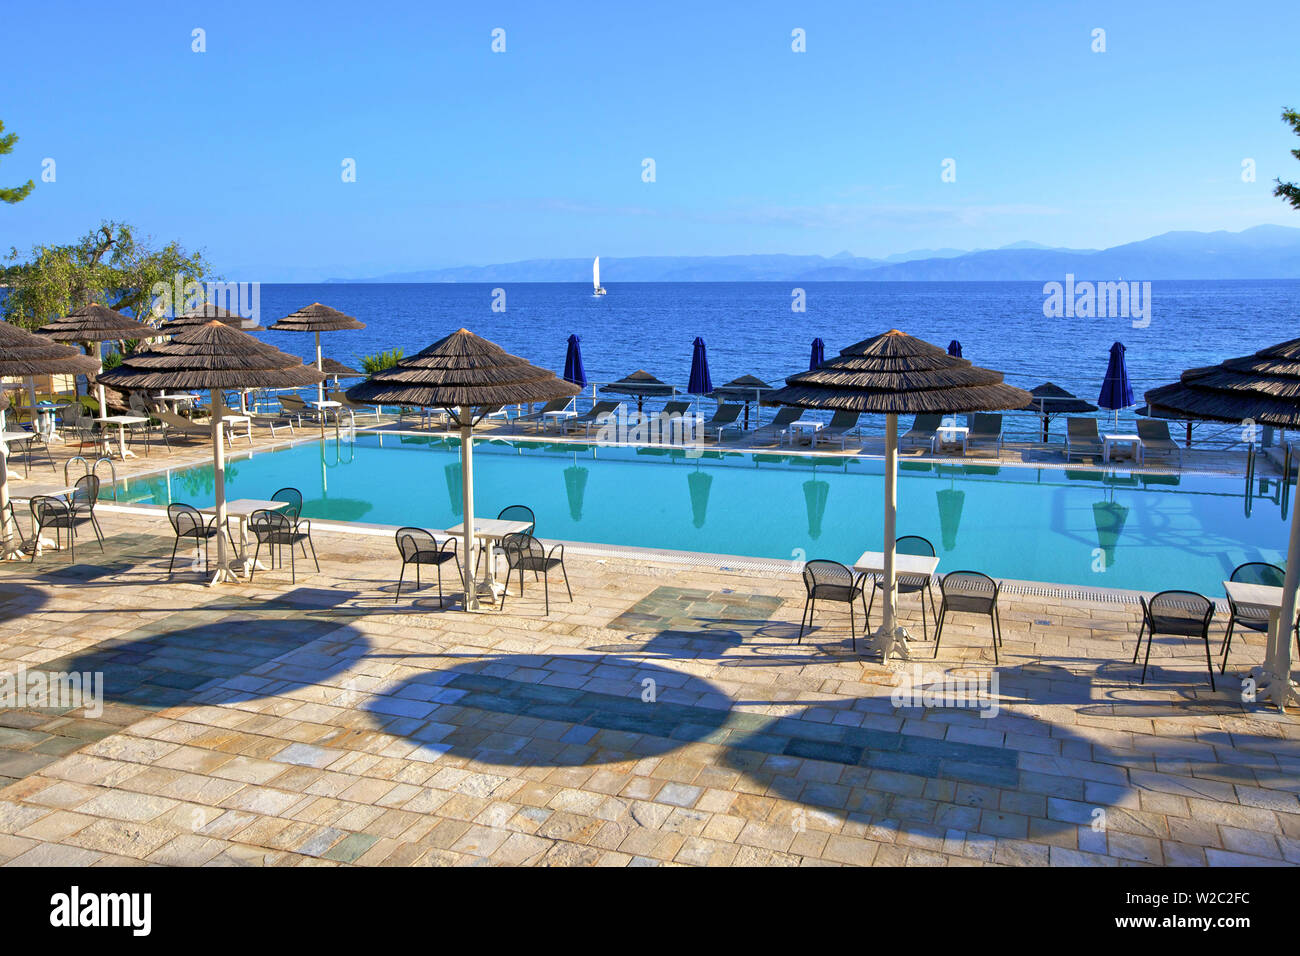 Piscine de l'hôtel, Paxos, îles Ioniennes, îles grecques, Grèce, Europe Banque D'Images